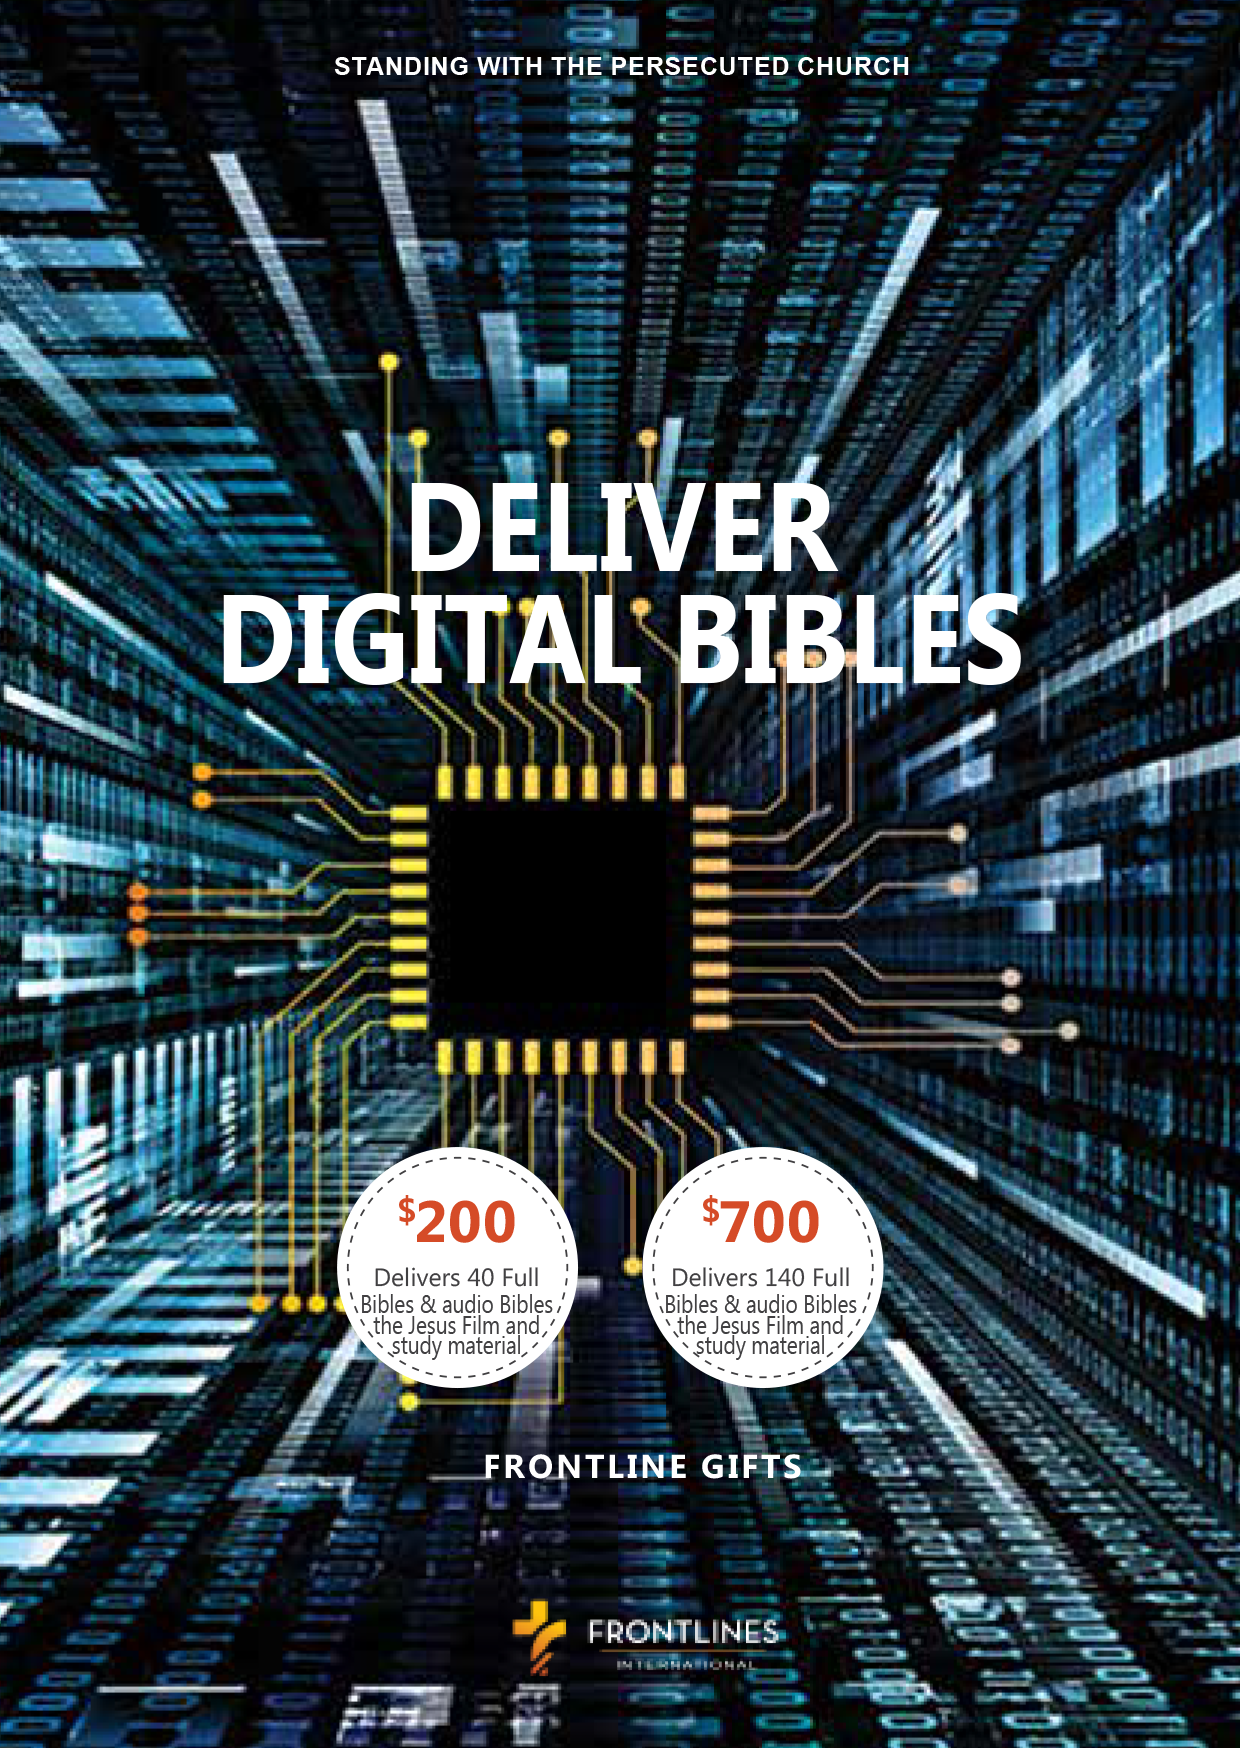 Help deliver digital Bibles